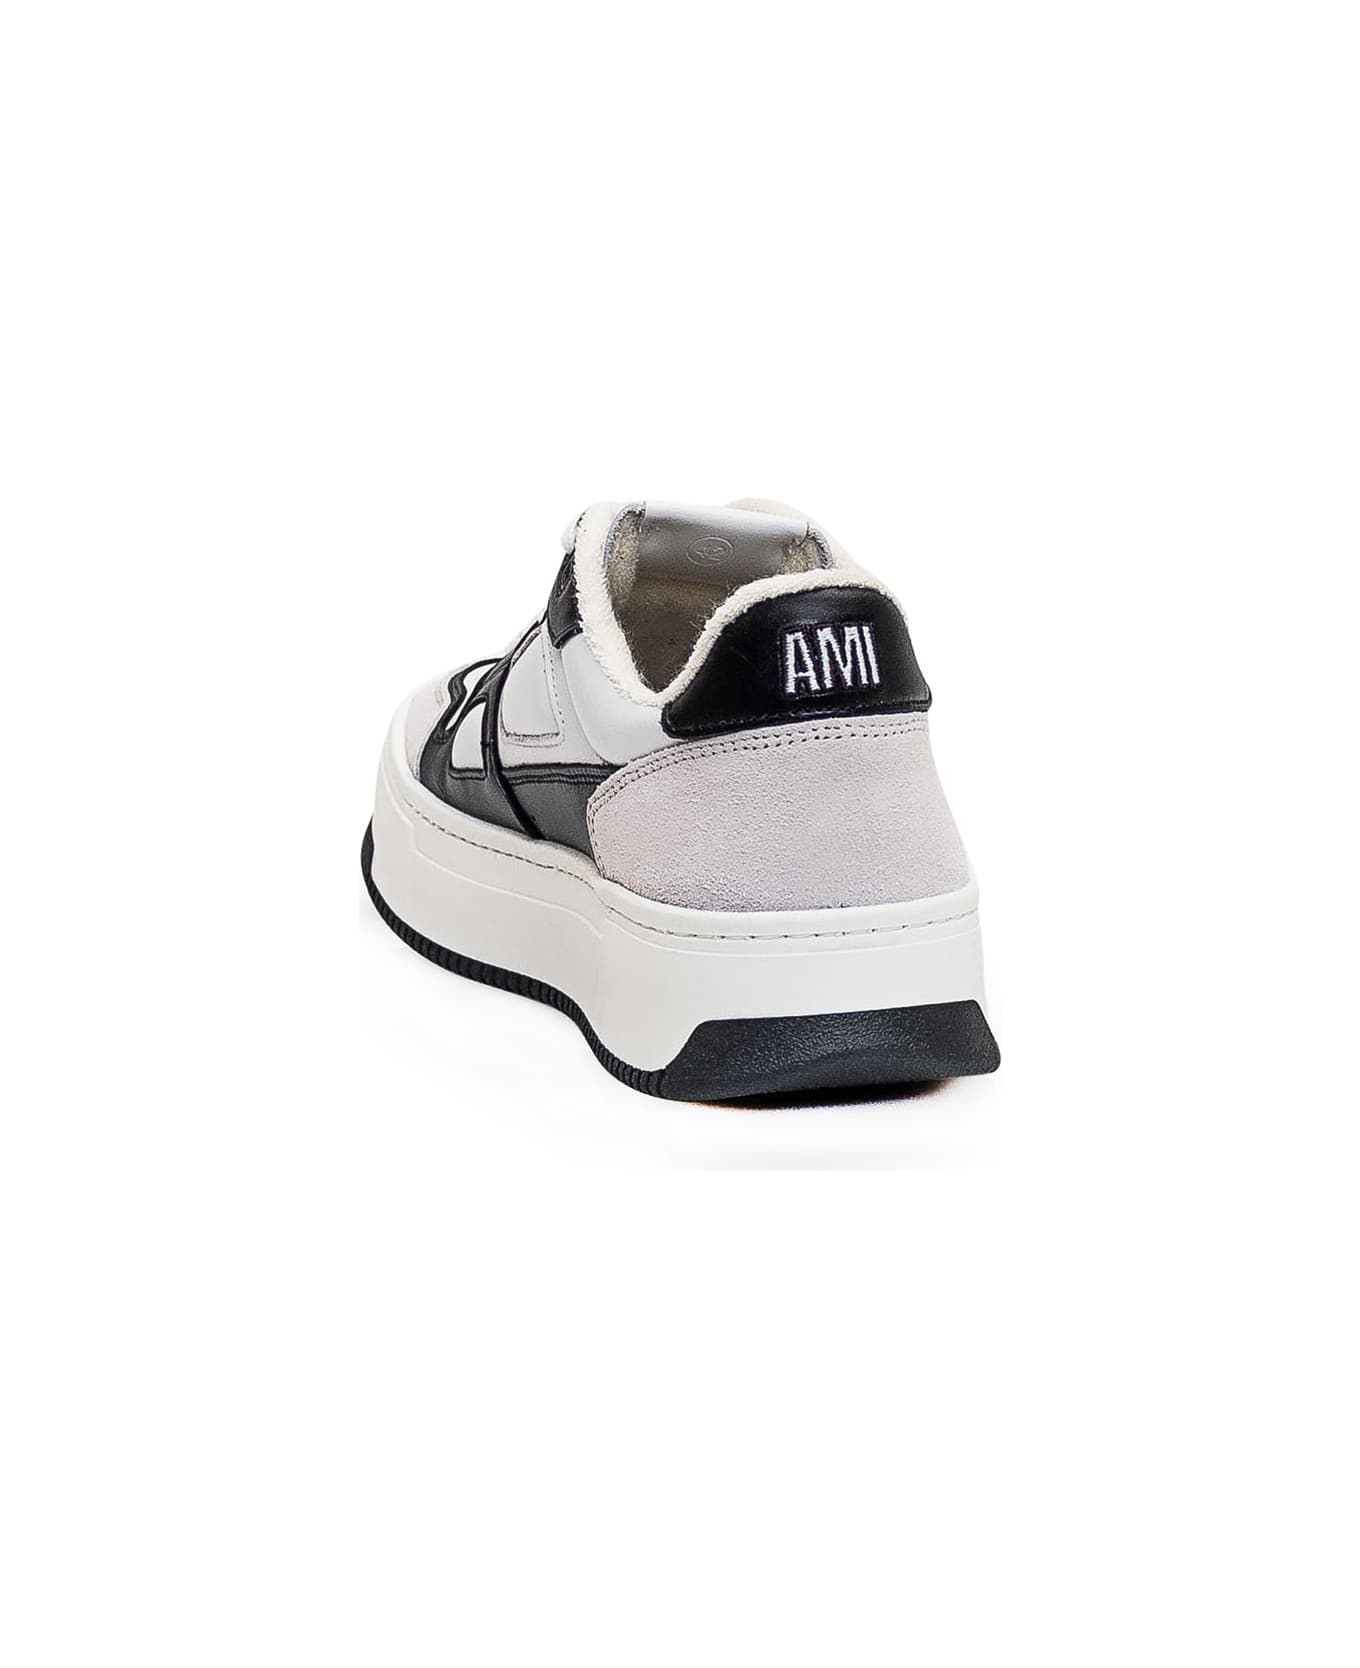 Ami Alexandre Mattiussi New Arcade Sneaker - BIANCO/NERO